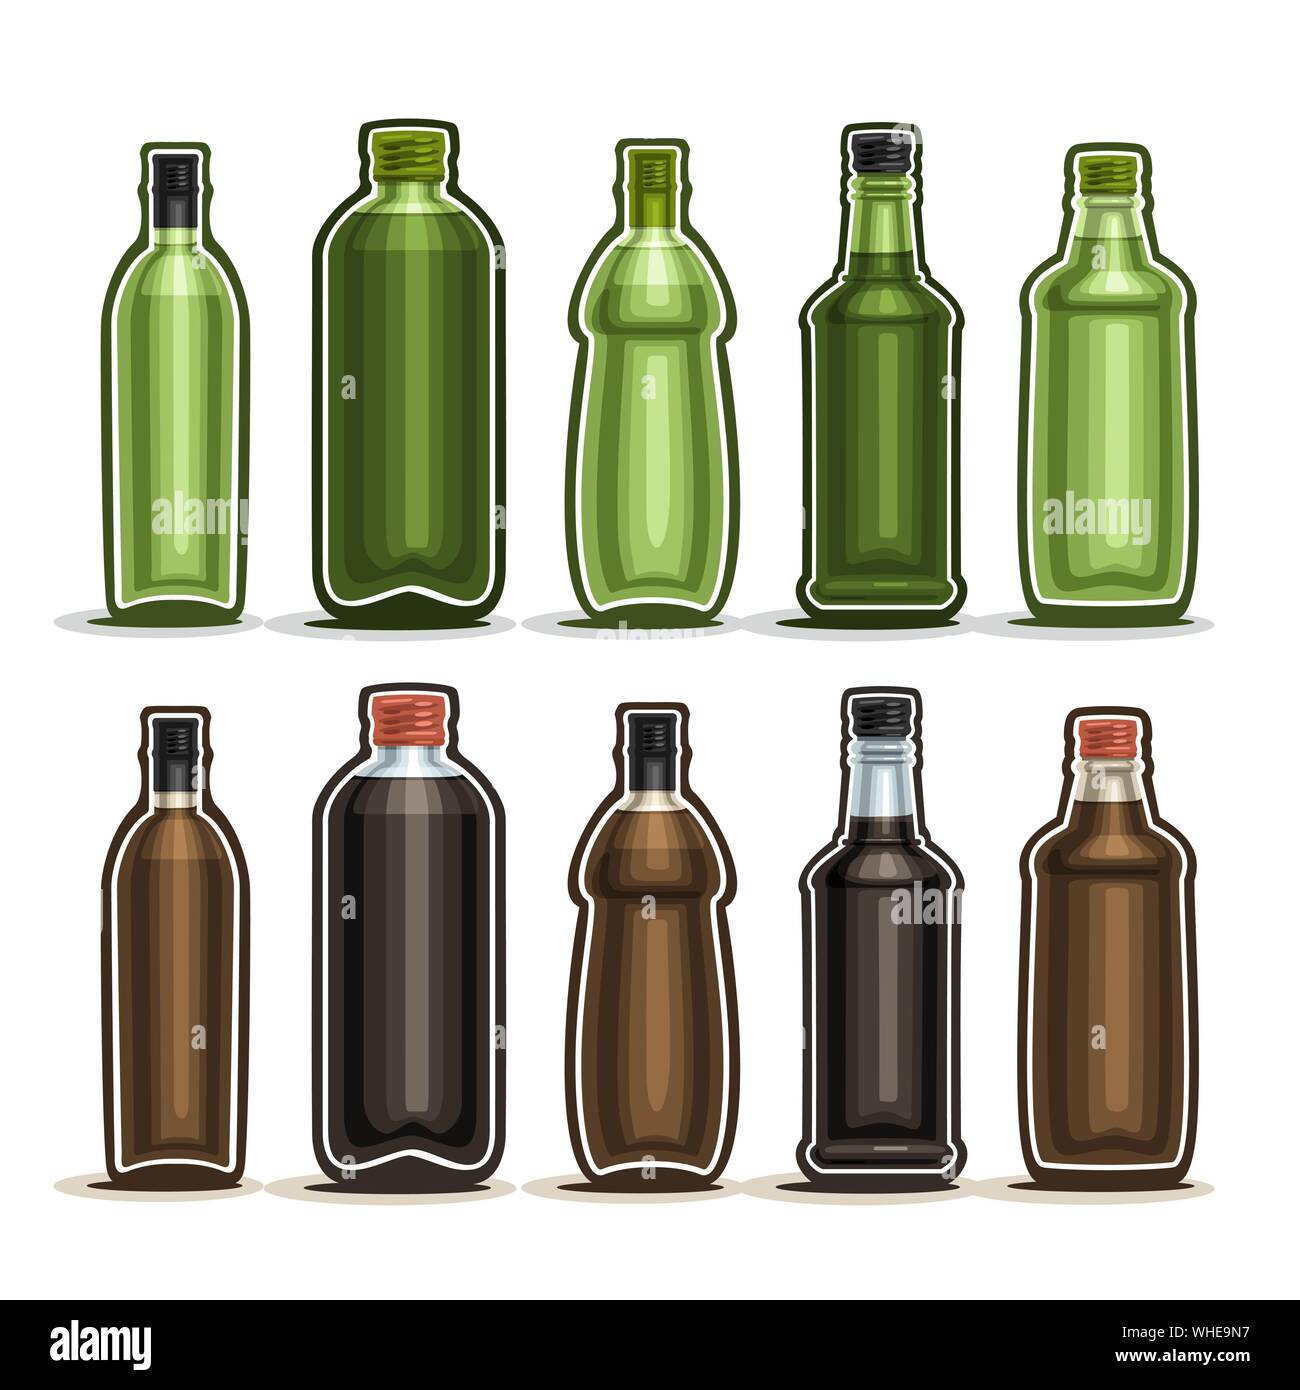 Vector Set de bouteilles en verre avec bouchon métallique pour boire de  l'alcool, collection de 10 contenants de plastique vert, brun avec  couvercle pour la cuisson de l'huile ou vinaigre balsamique vi